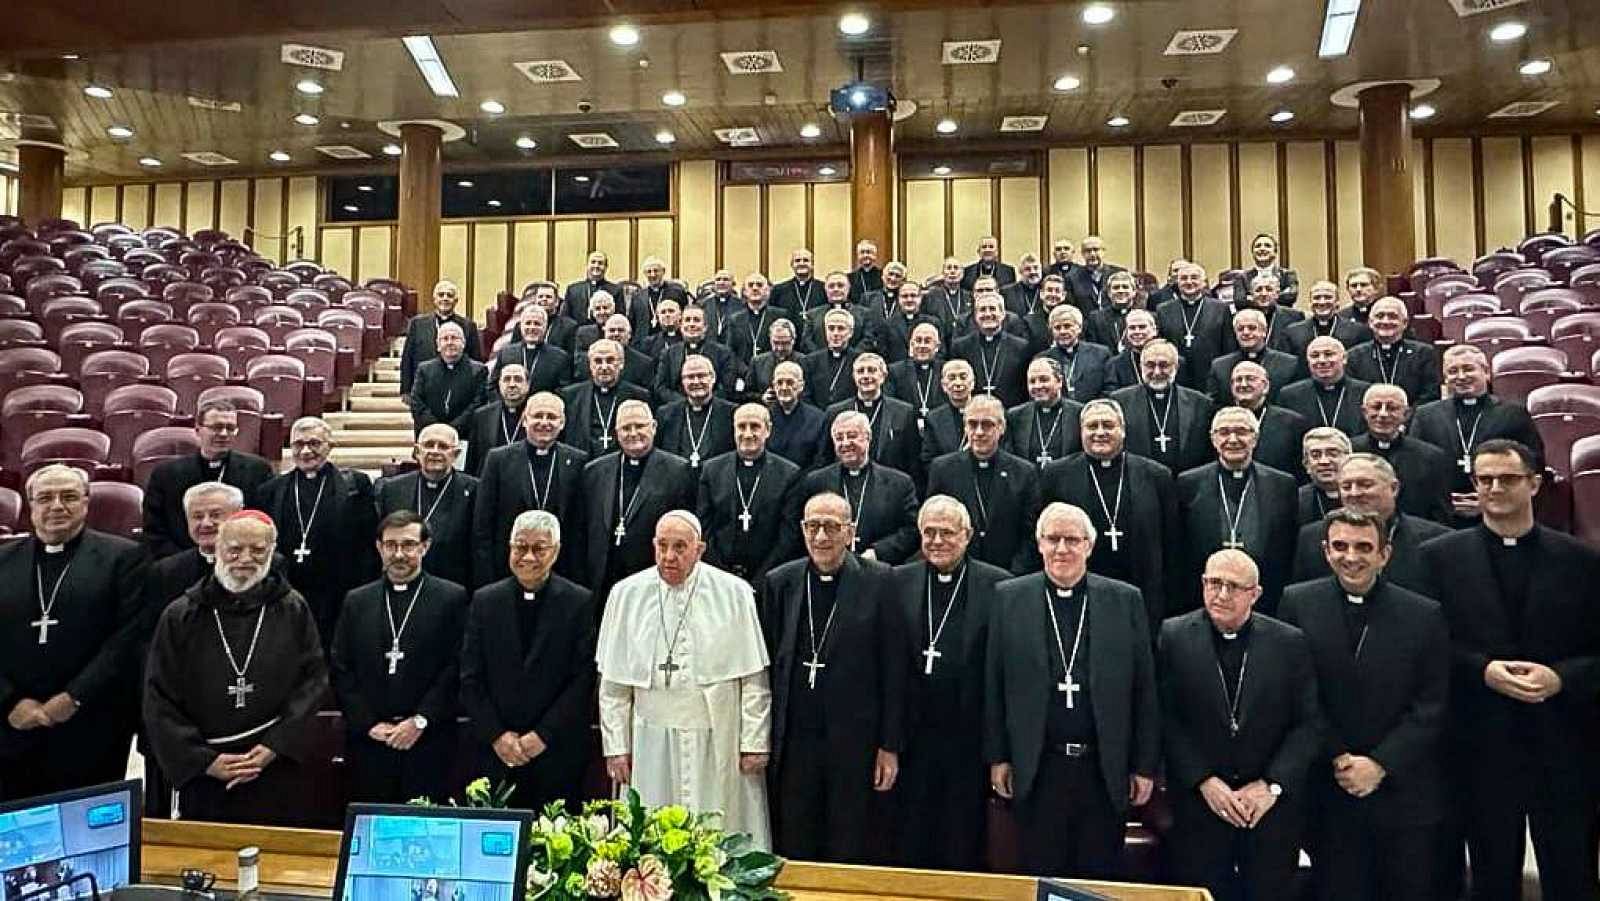 El papa evita "tirar de las orejas" a los obispos españoles tras el informe de abusos en la Iglesia